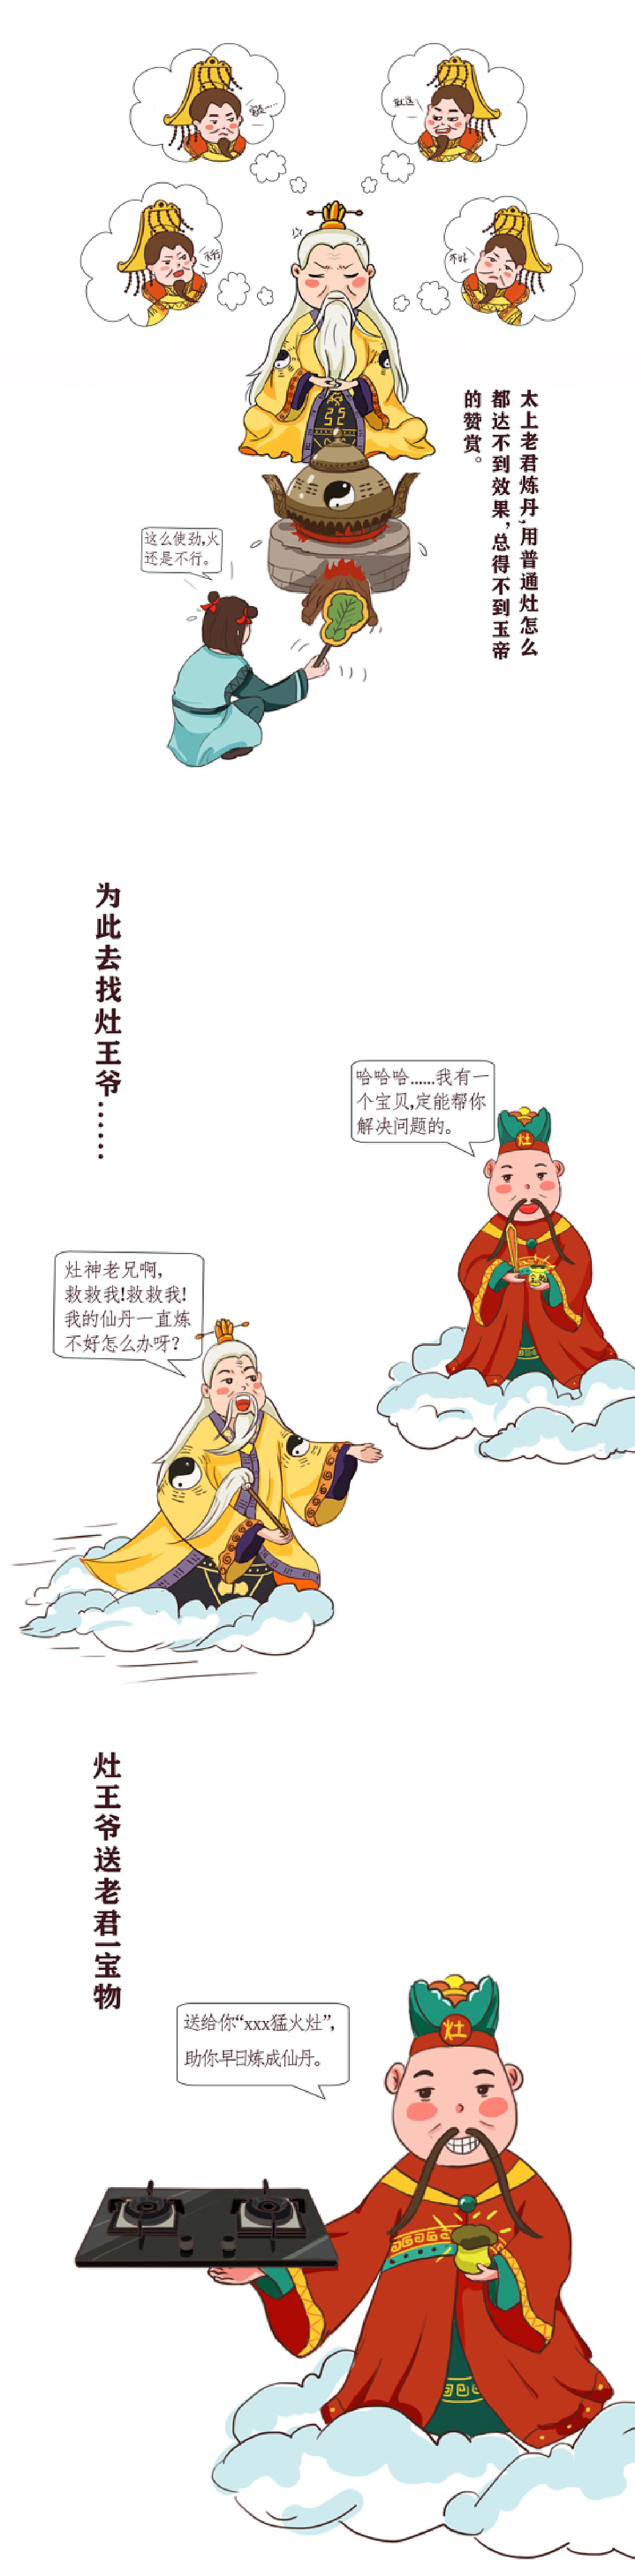 西游记：太上老君地位不如如来佛祖吗，为何会手捧礼物拜献佛祖？ – 旧时光